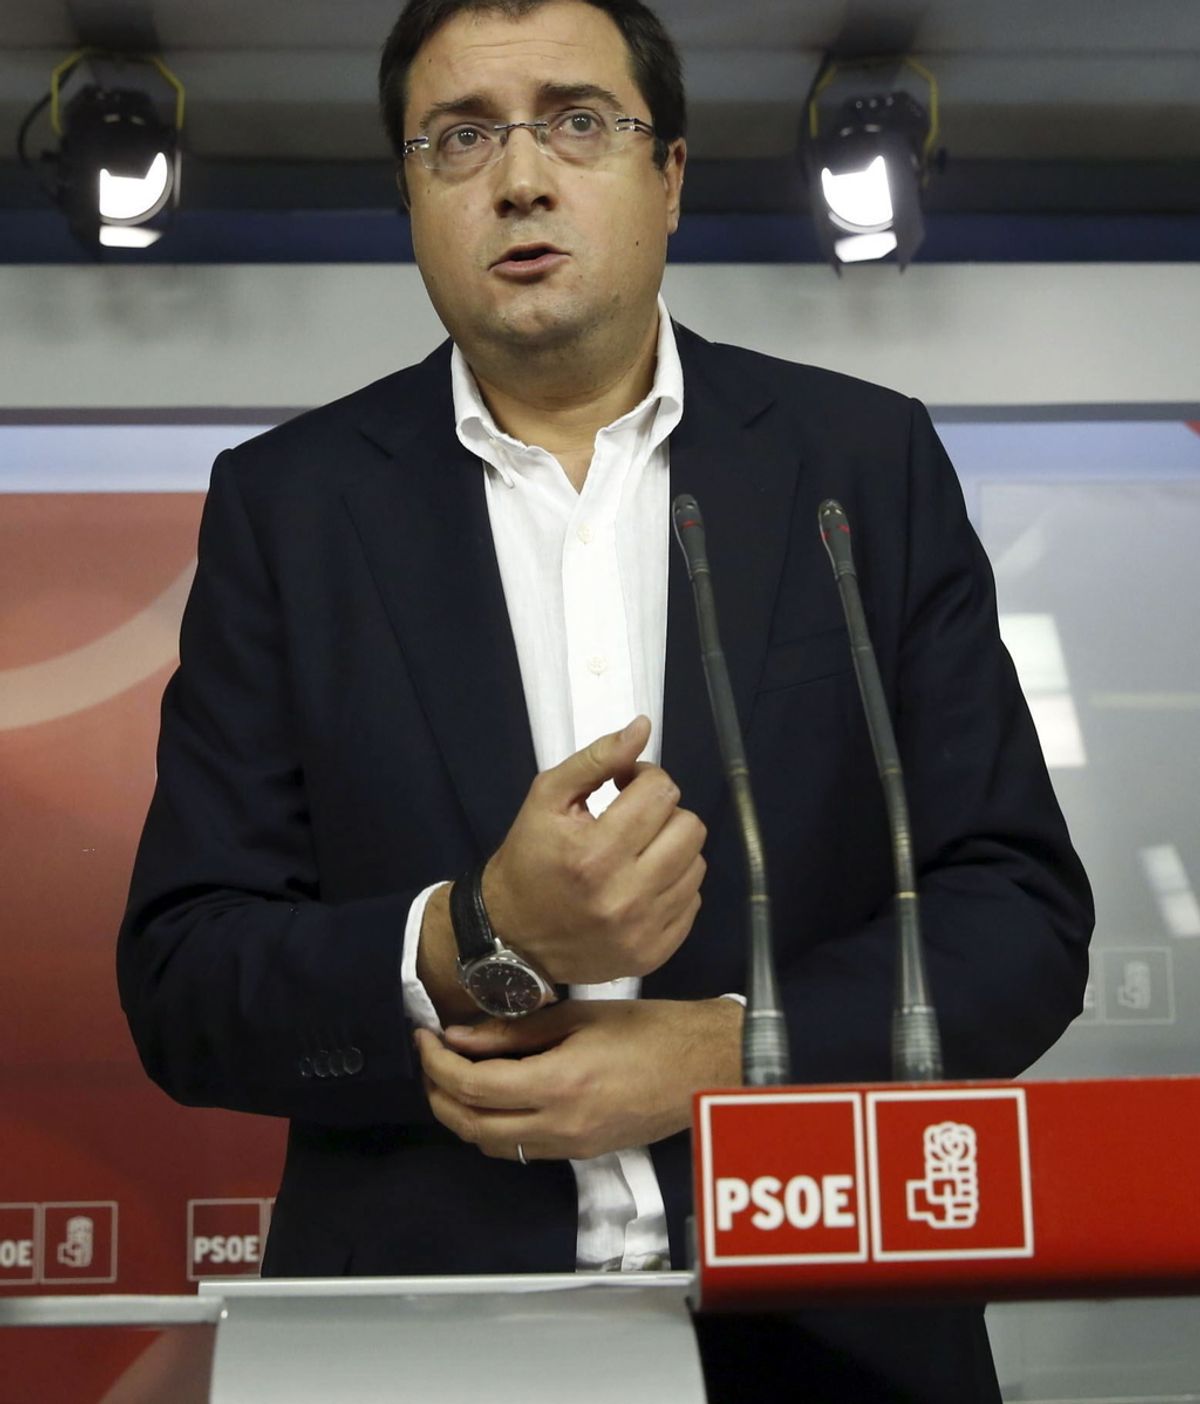 El secretario Organización del PSOE, Óscar López, en la comparecencia dada en la sede del PSOE